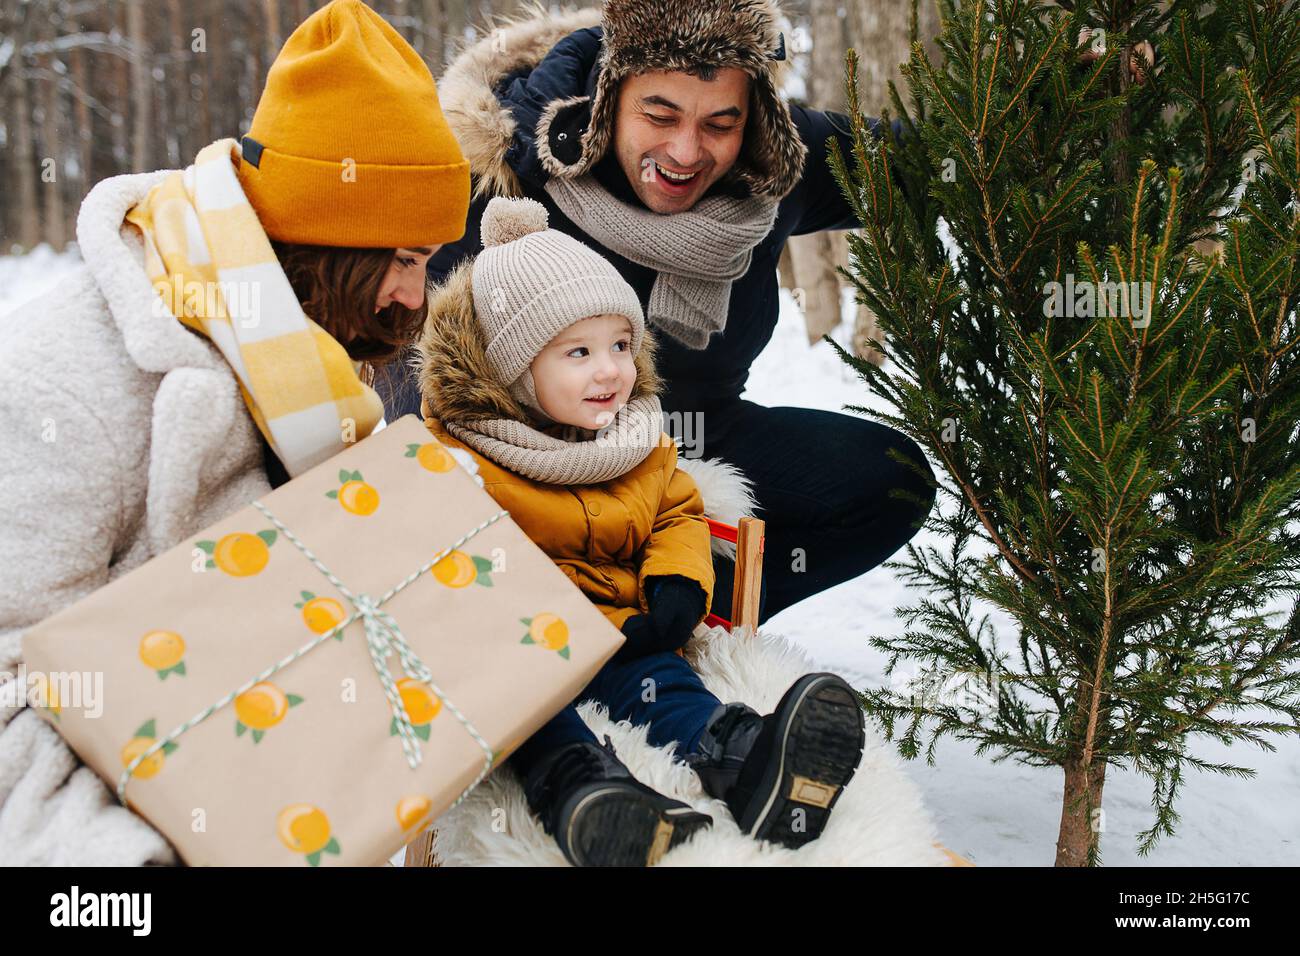 Famille dans une forêt d'hiver, un parent à côté d'un enfant en traîneau, maman tient un cadeau, et papa montre un arbre de Noël Banque D'Images